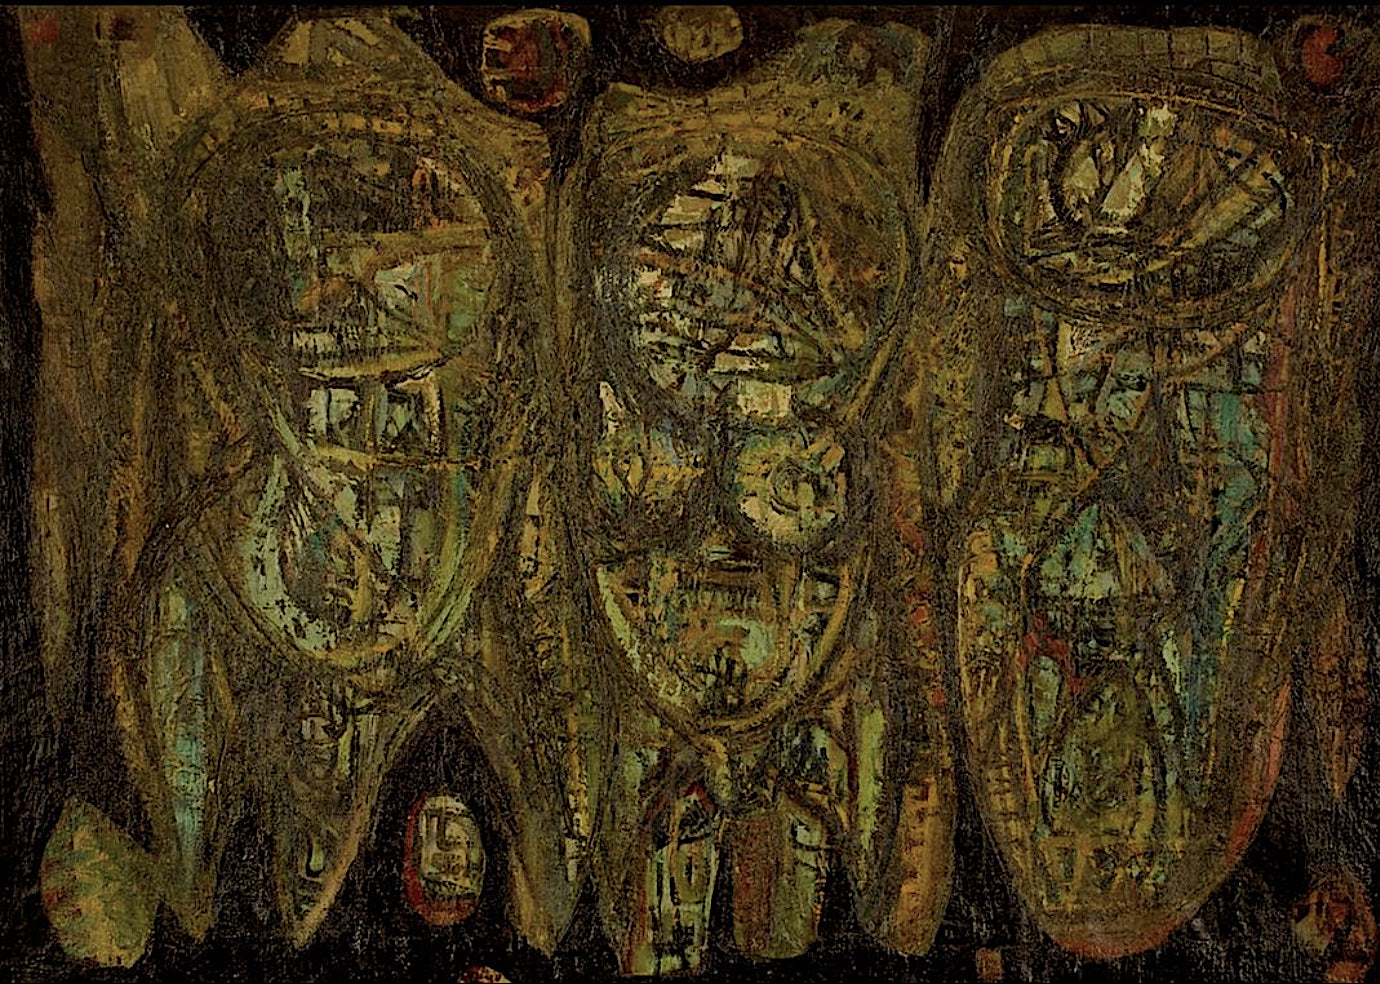 Threefigures, 1969